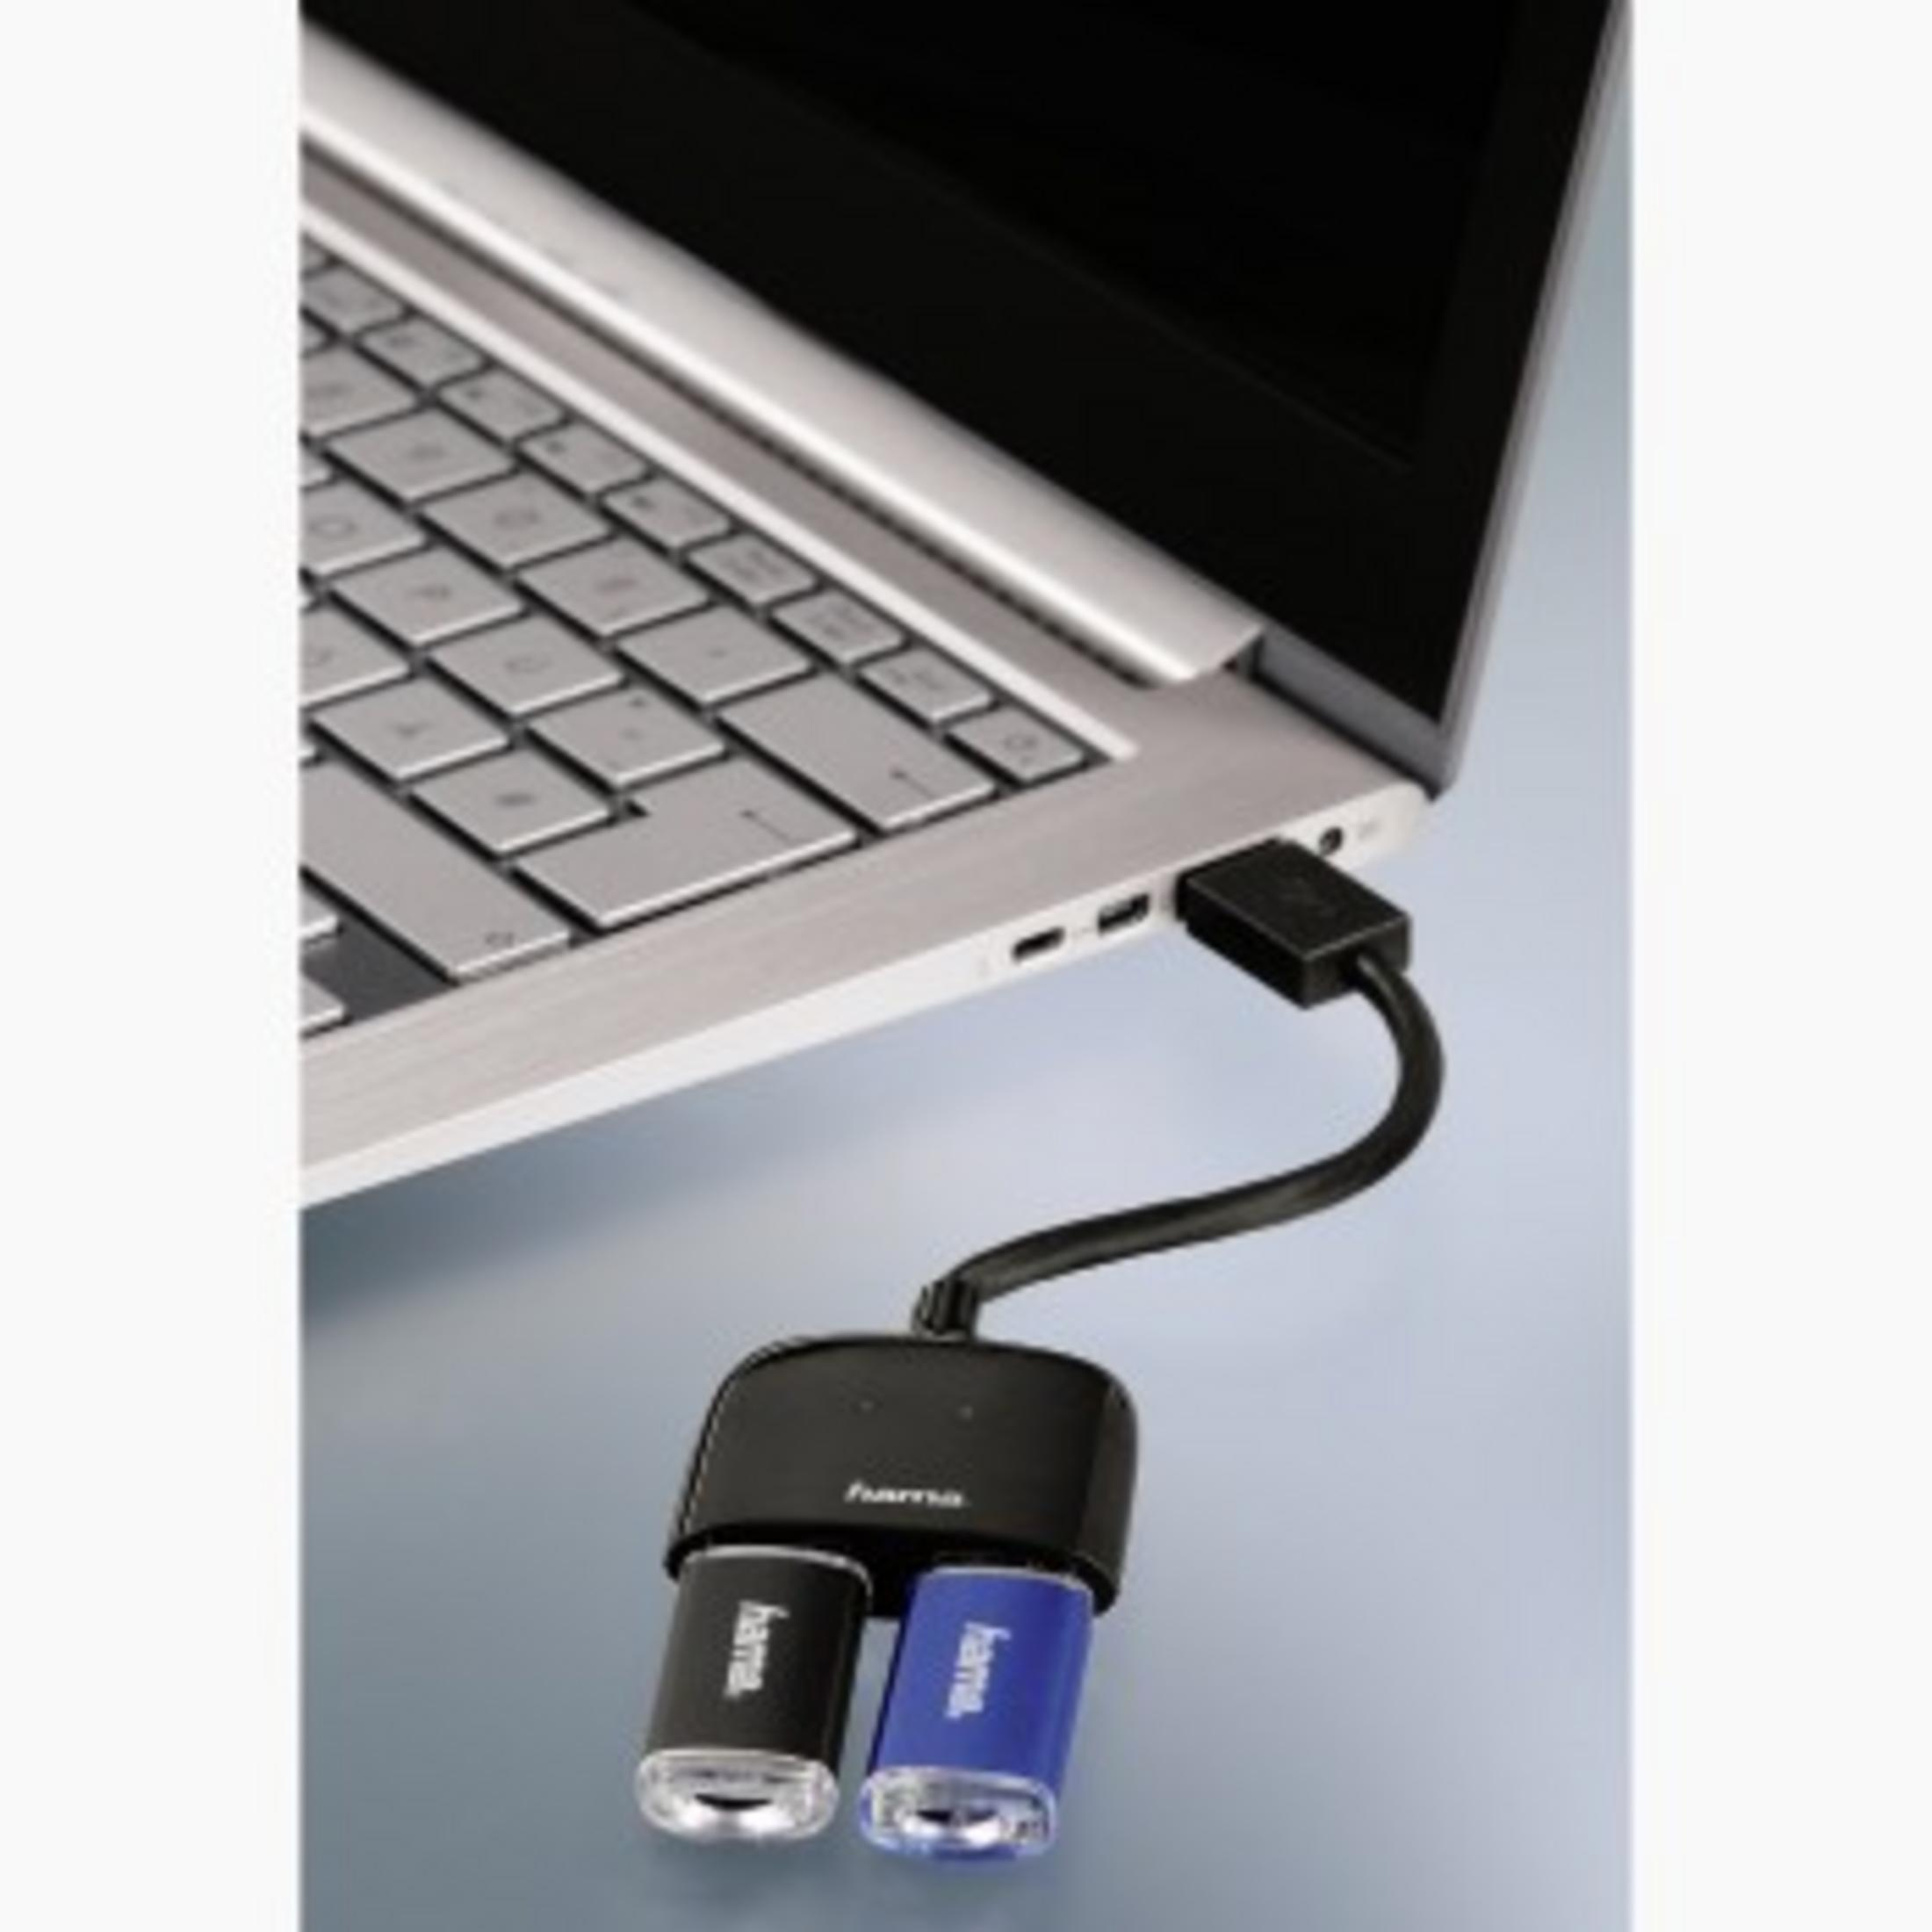 FACH, Schwarz USB USB HAMA HUB 3.0 Hub, 3.0 054132 2